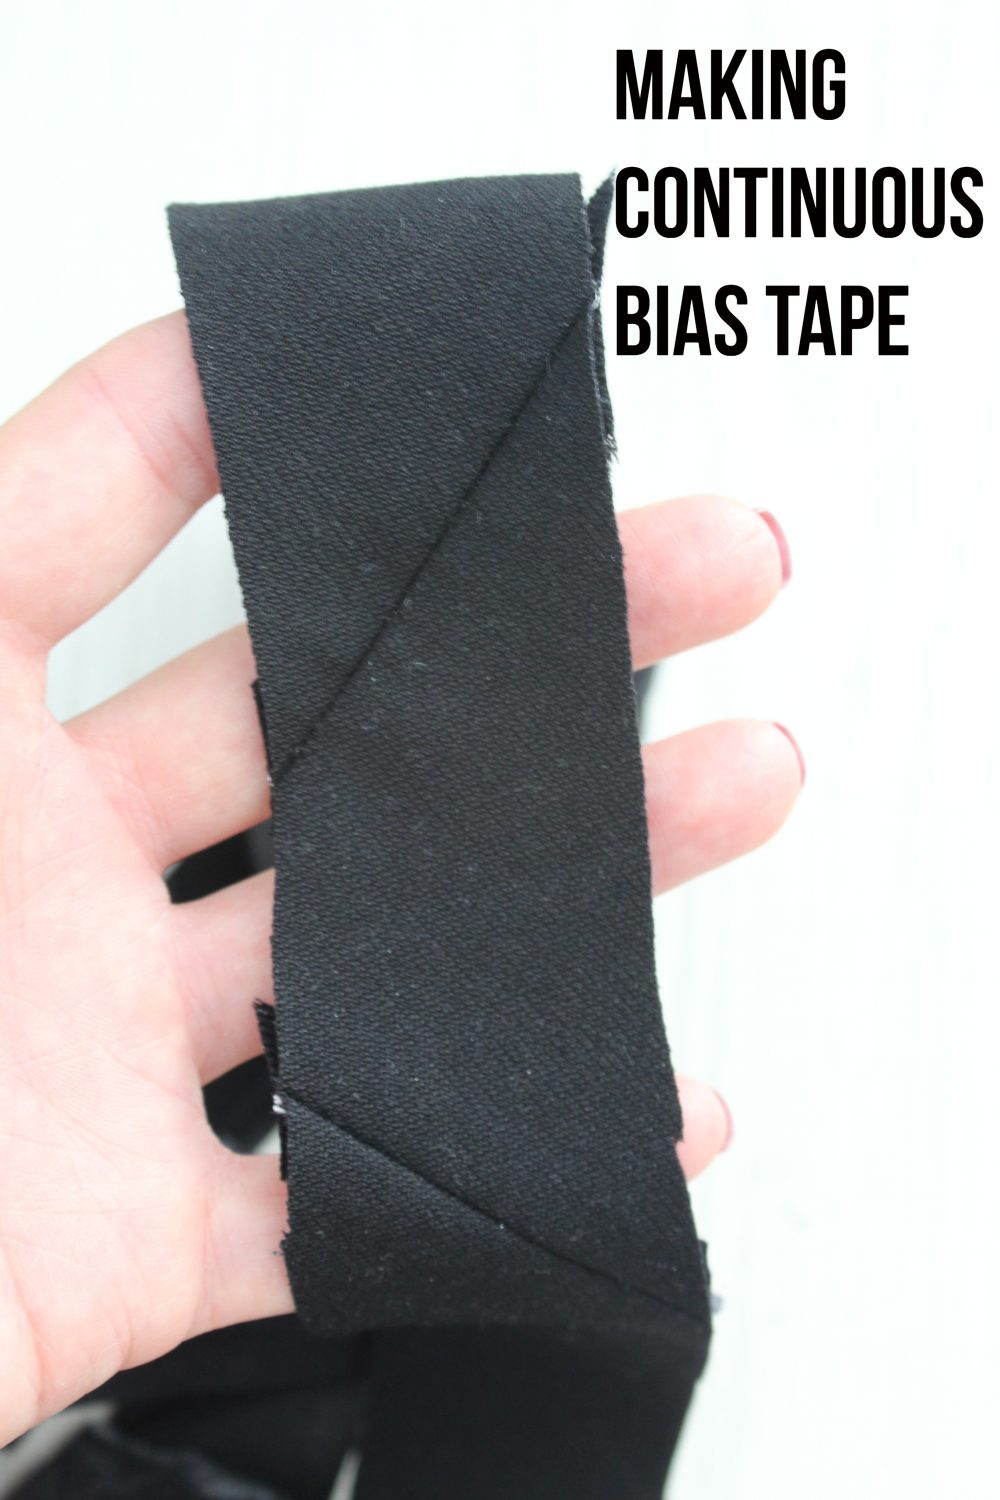 Continuous bias tape